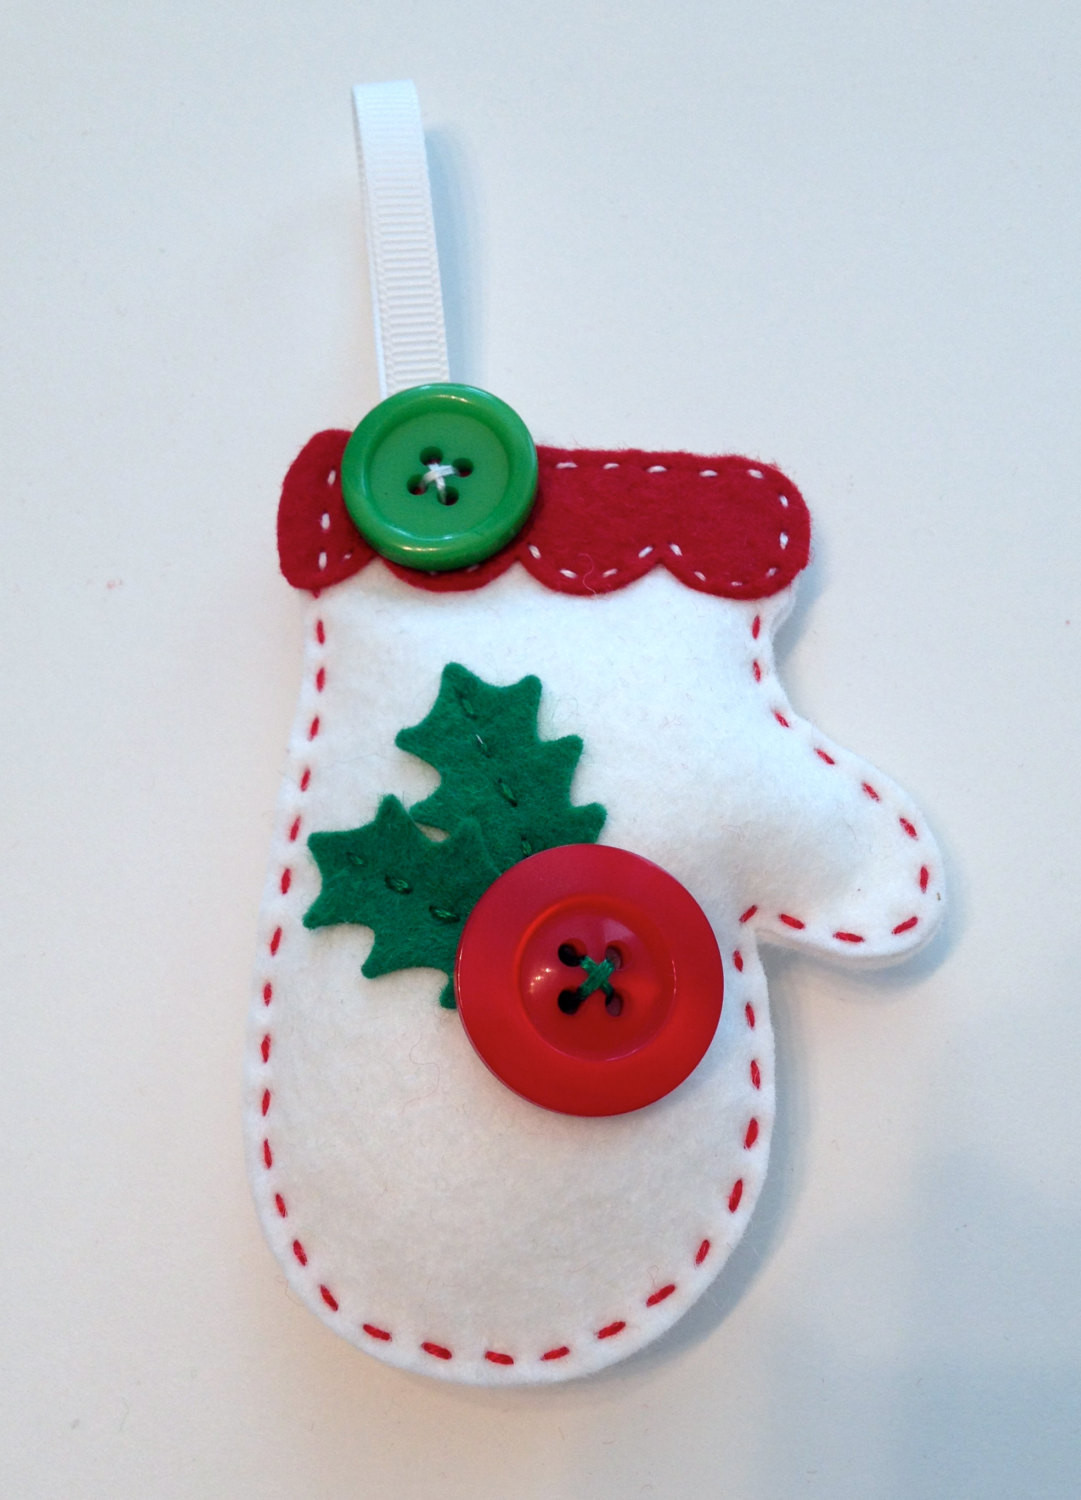 DIY Felt Christmas Ornament
 DIY Felt Holly Mitten Ornament KIT by PolkaDotCreek on Etsy